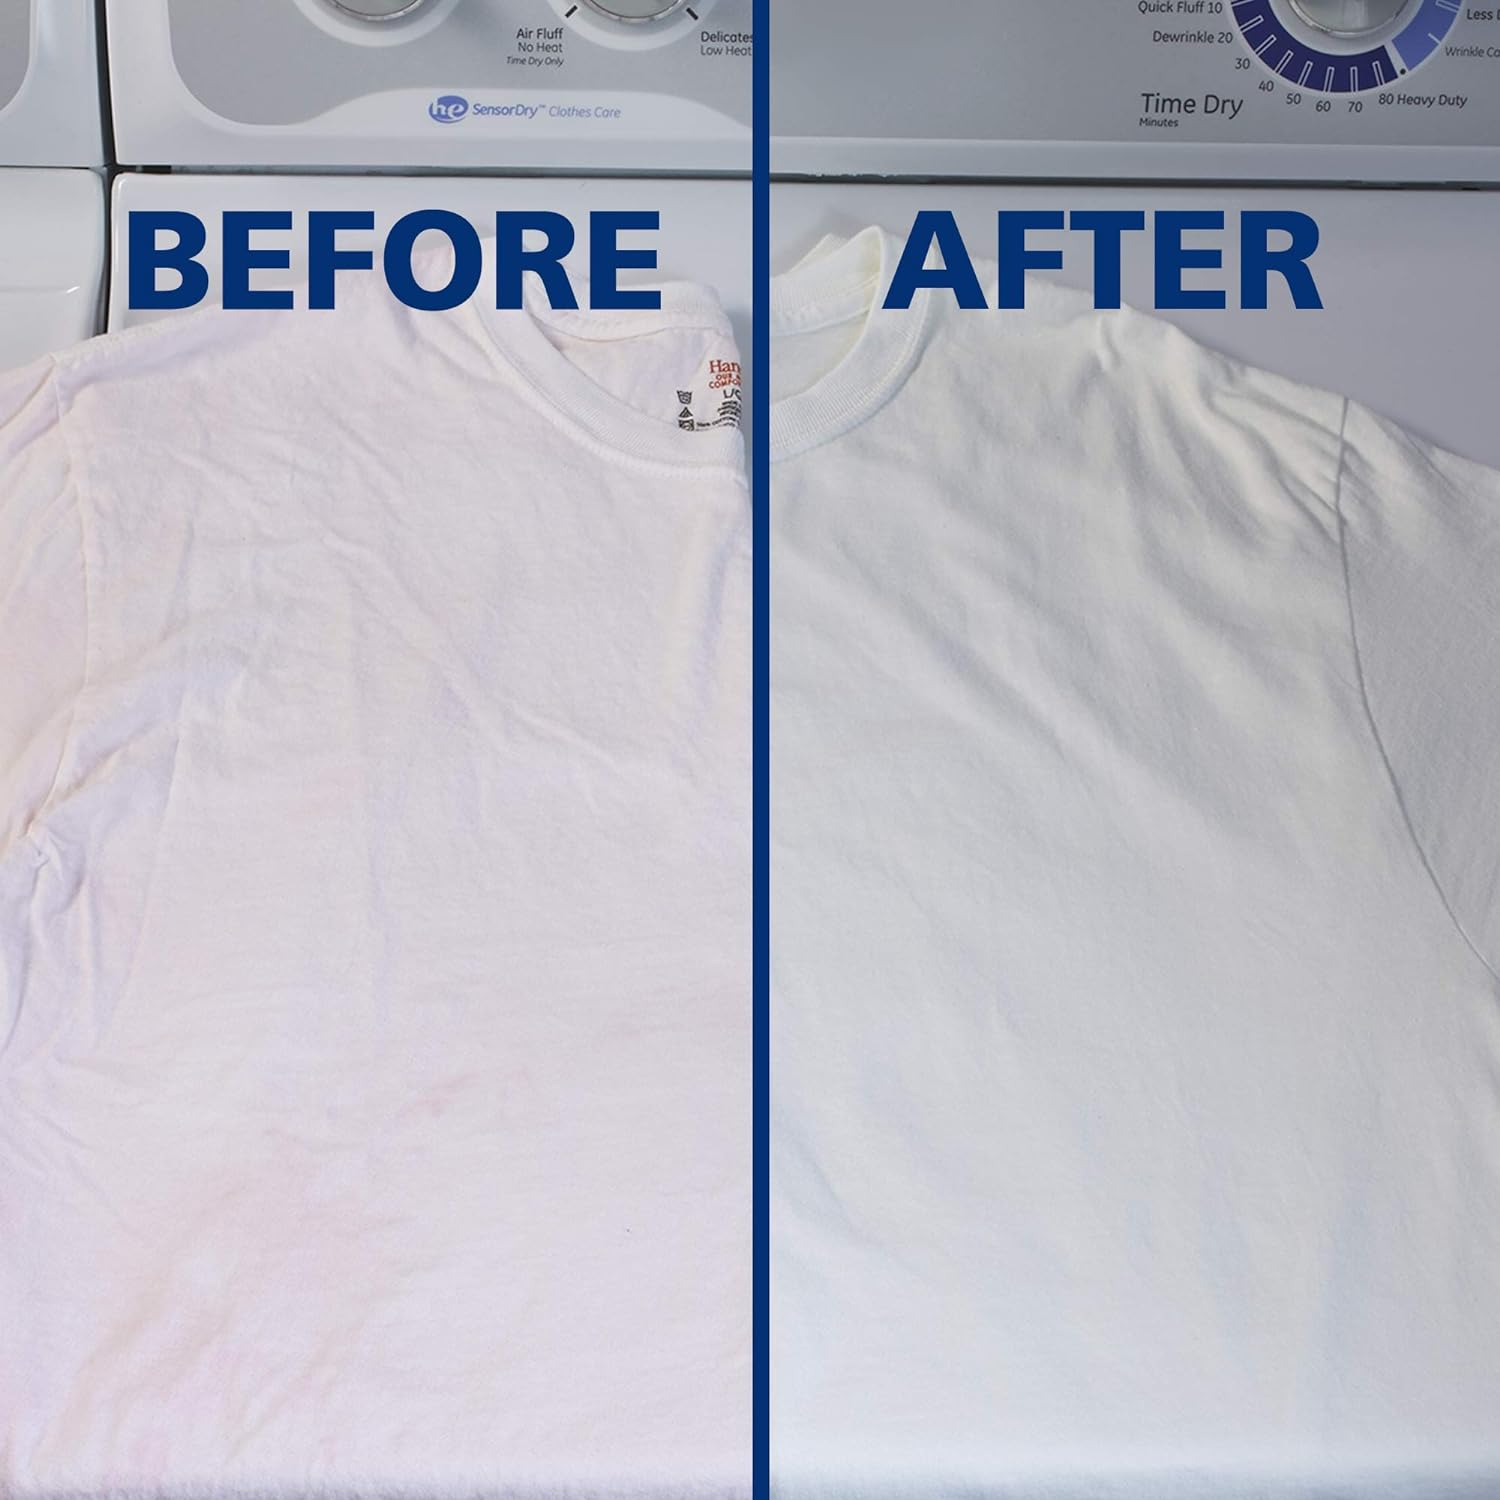 White Brite WB30N 1LB + 12 oz (793 g) White Brite Laundry Whitener Powder : Health & Household